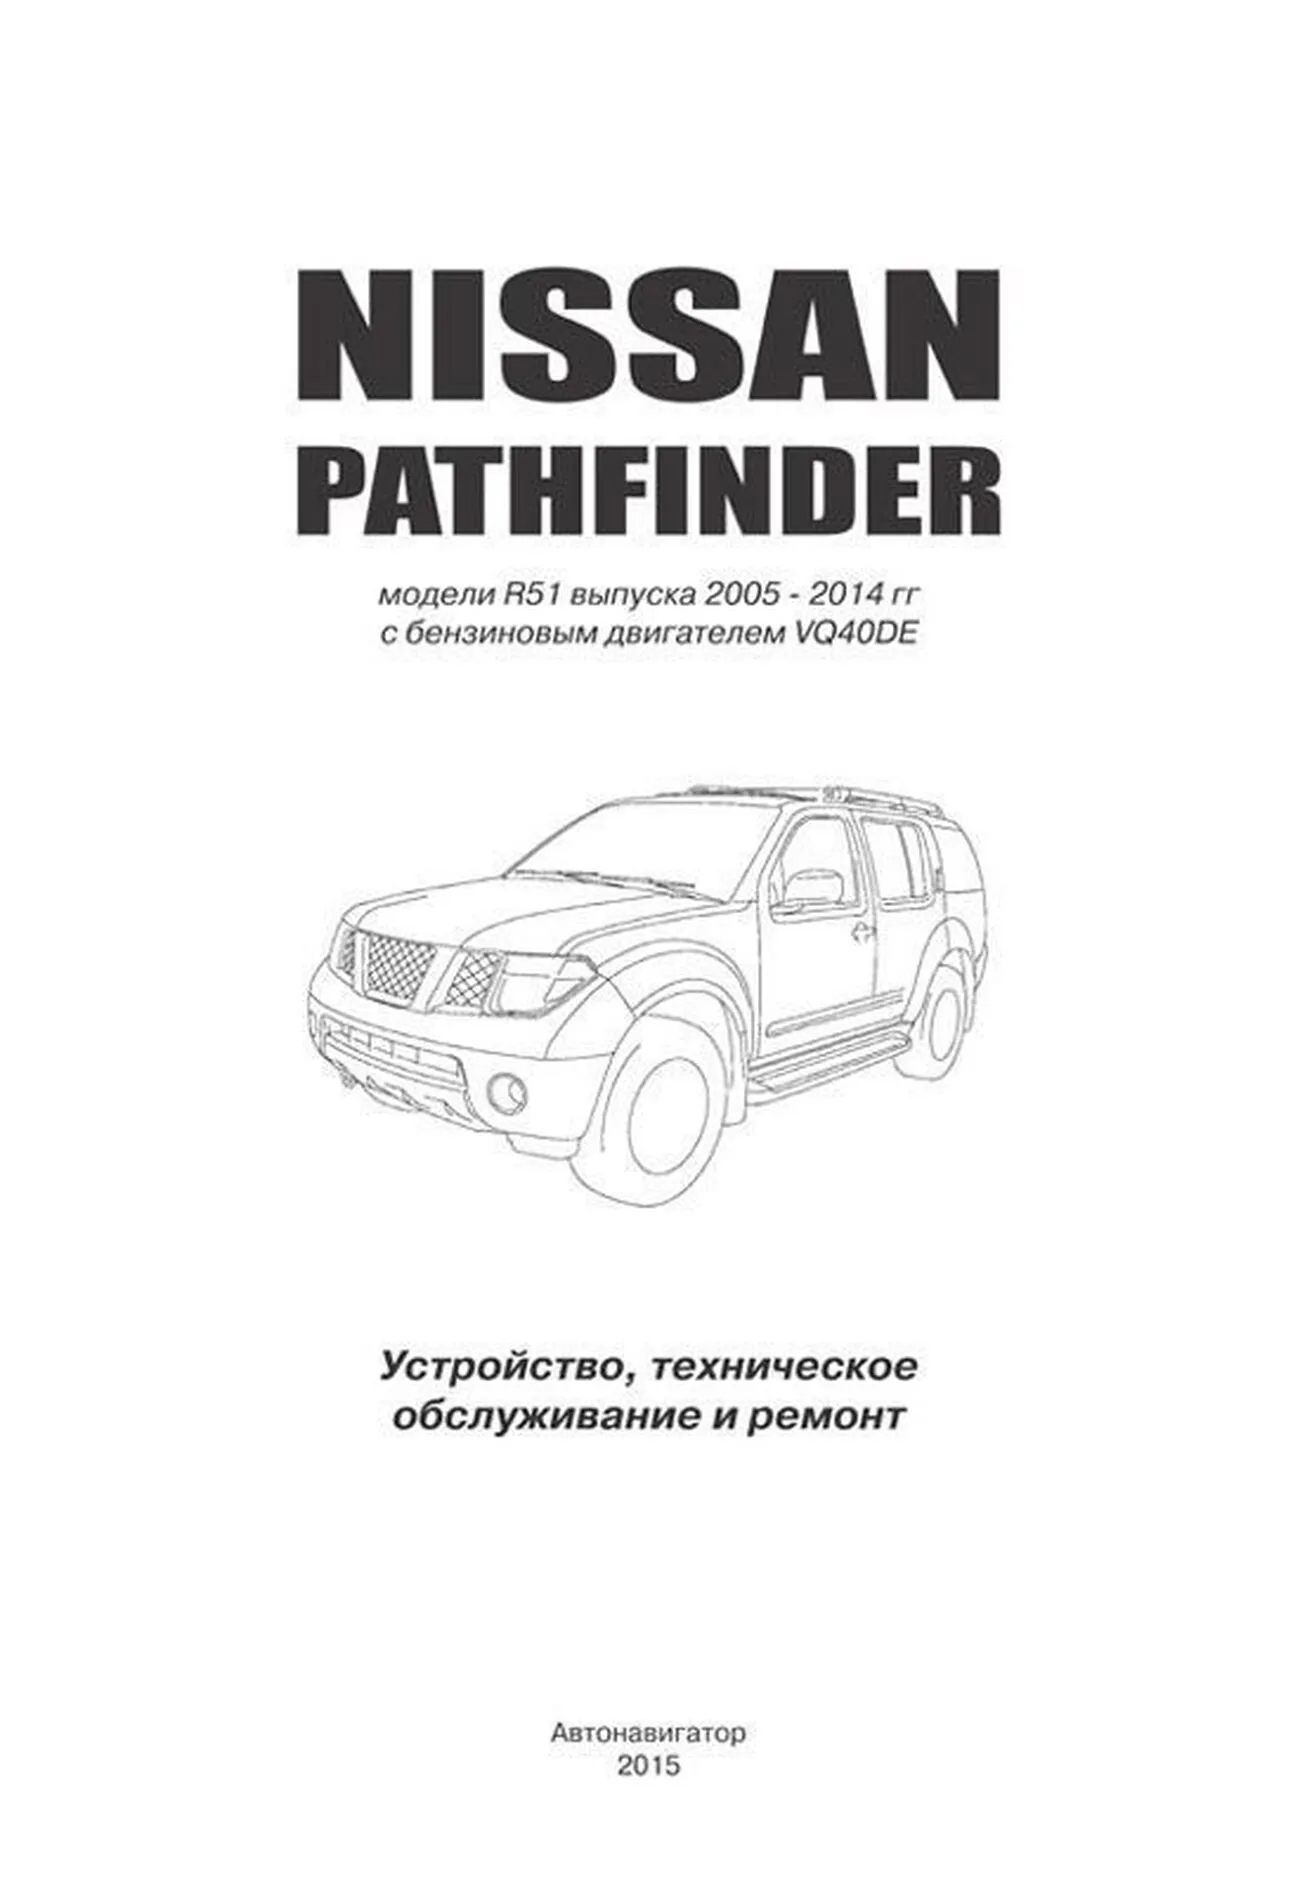 Книга: NISSAN PATHFINDER R51 (б) с 2005-2014 г.в., рем., экспл., то | Автонавигатор